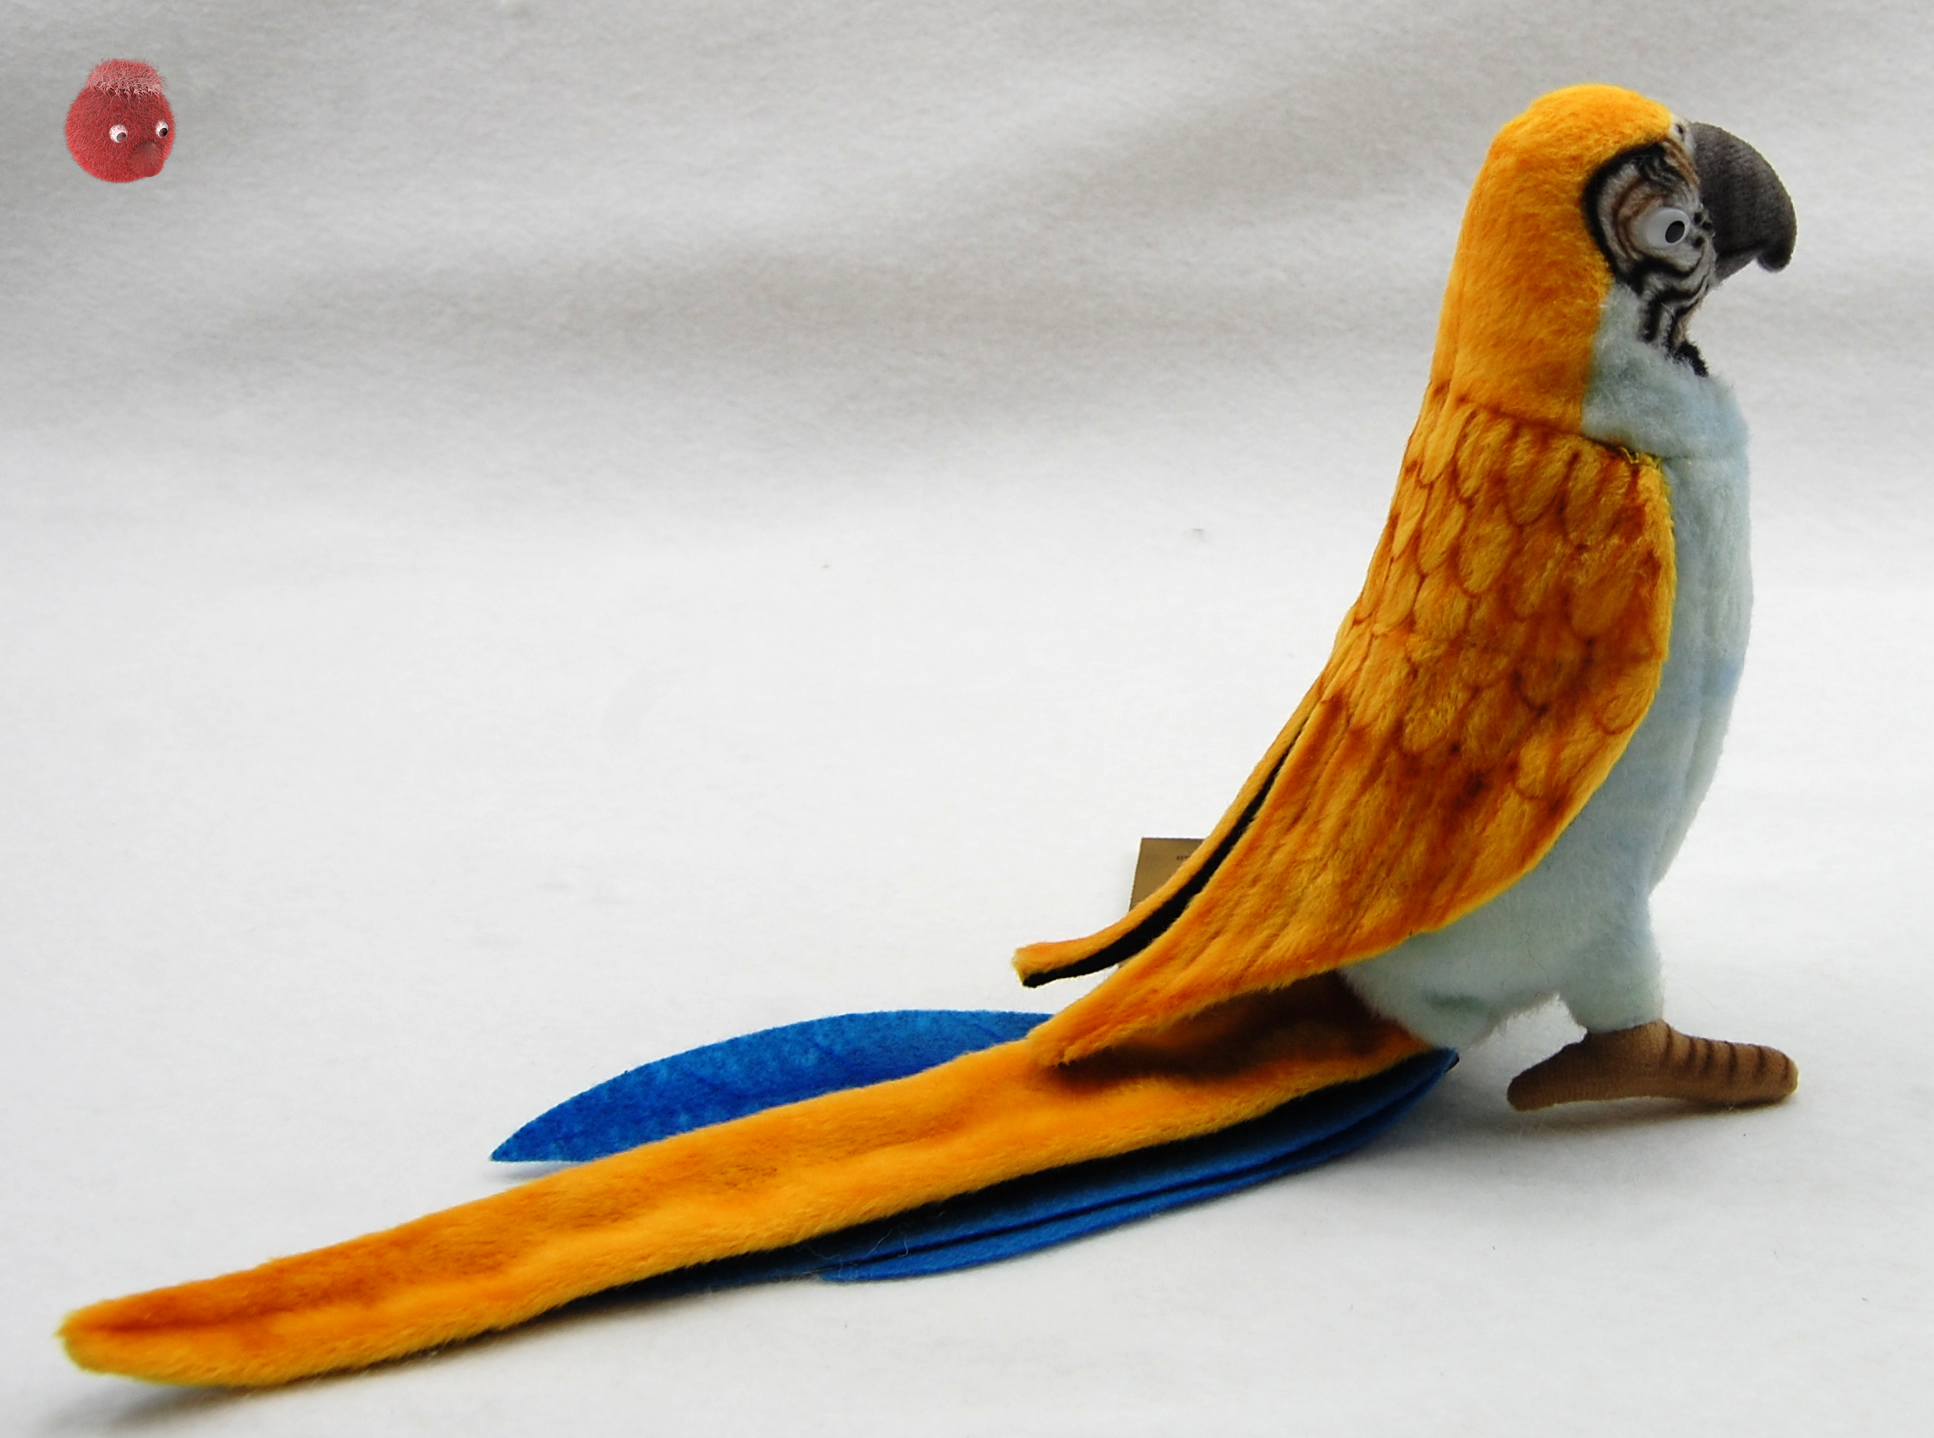 Hansa Toy 3459 Papagei blau fliegend 76 cm Kuscheltier Stofftier Plüschtier 